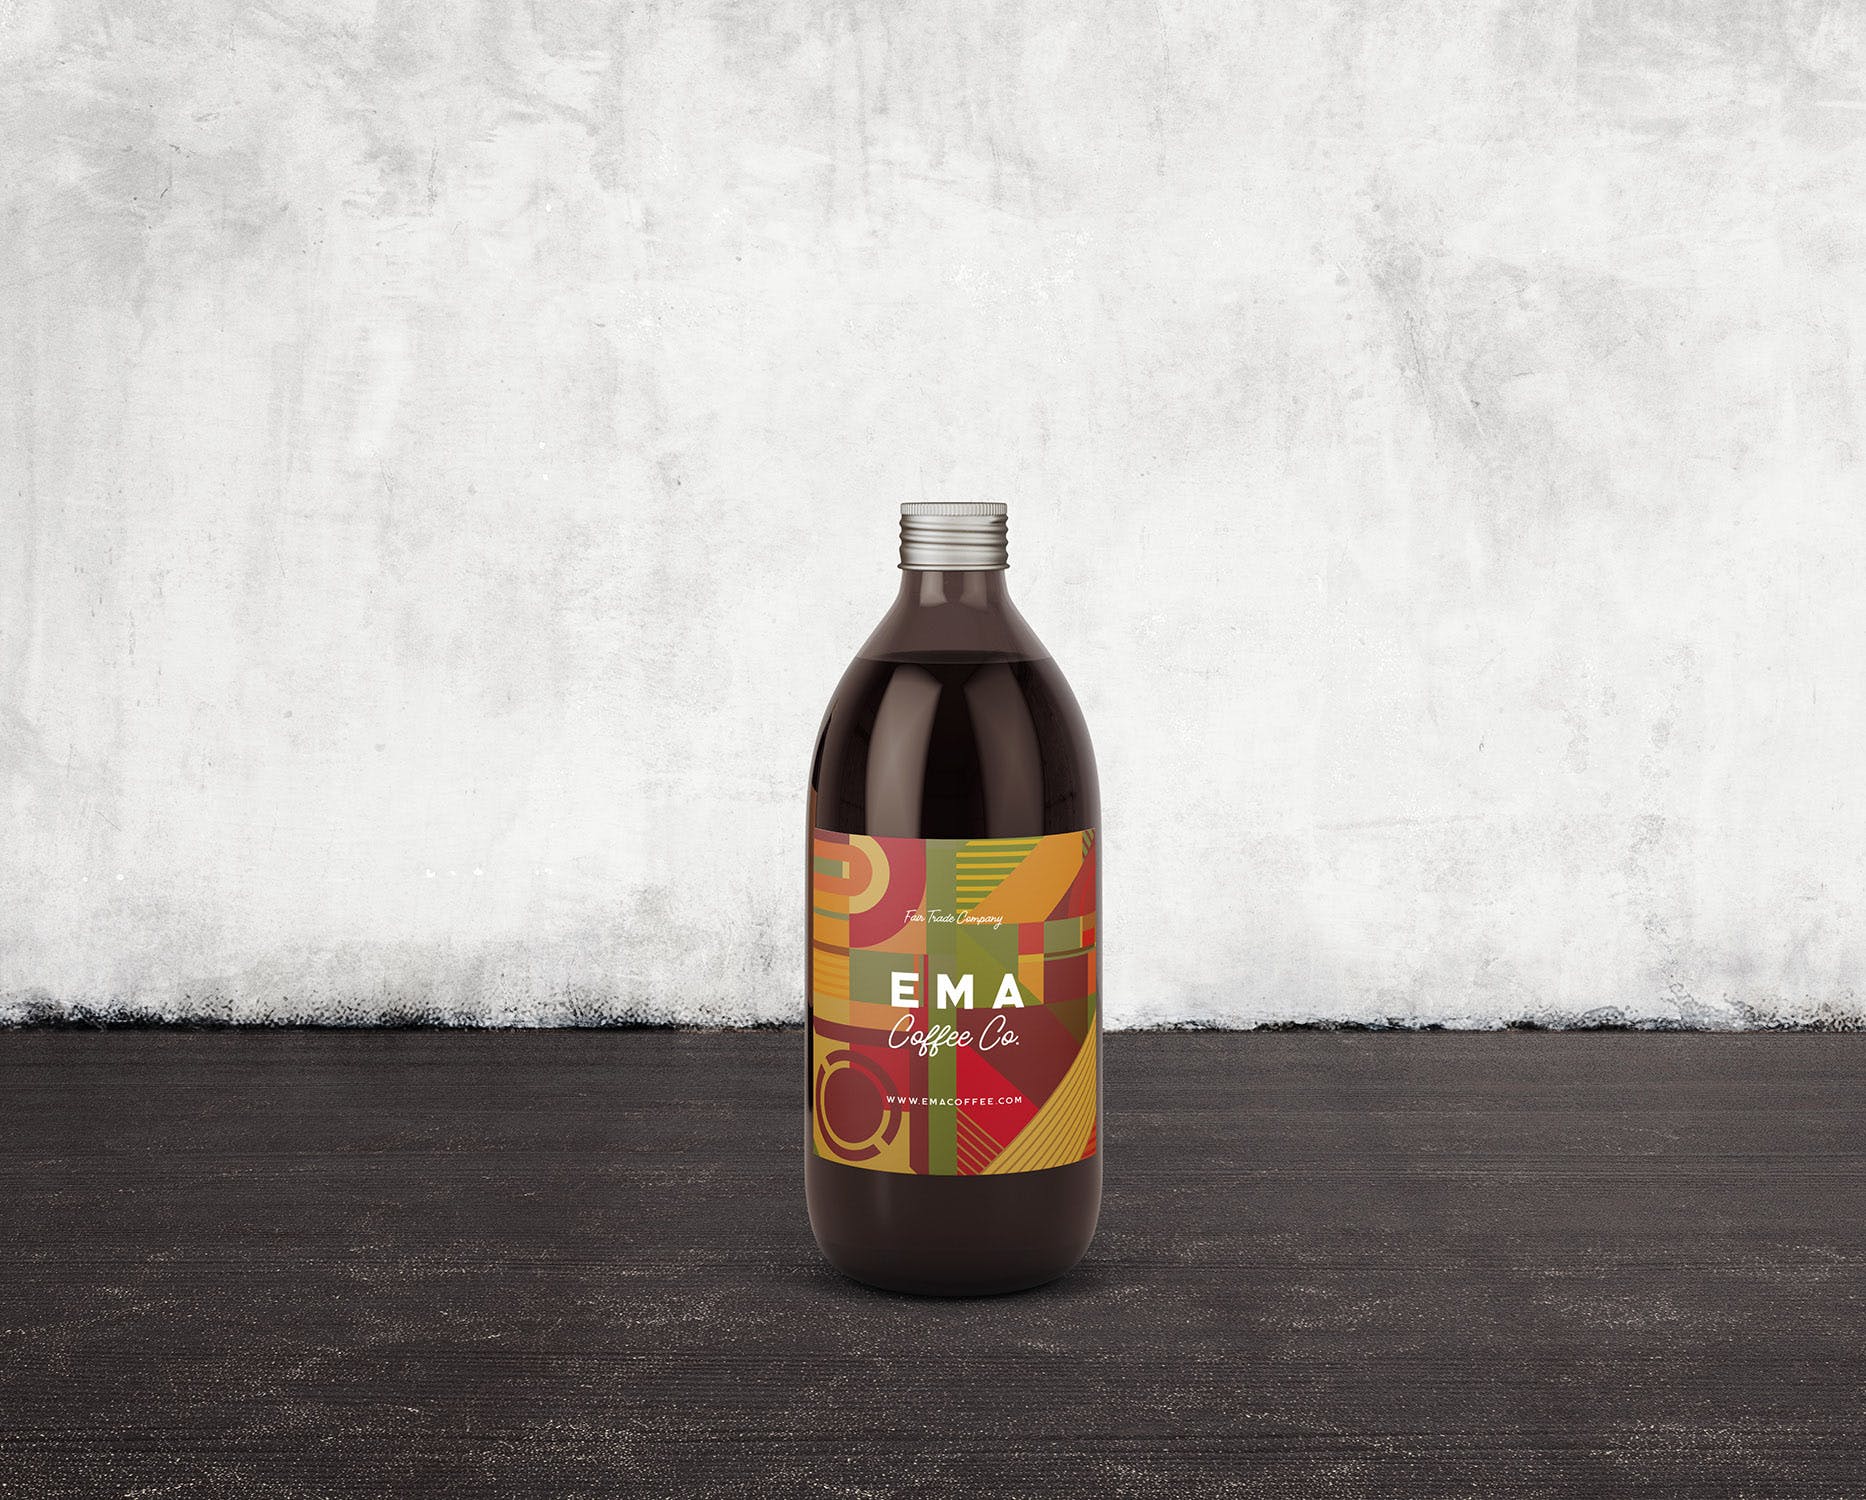 6个啤酒/咖啡/牛奶瓶外观设计蚂蚁素材精选v3 6 Beer Coffee Milk Bottles Mockups 3插图(3)